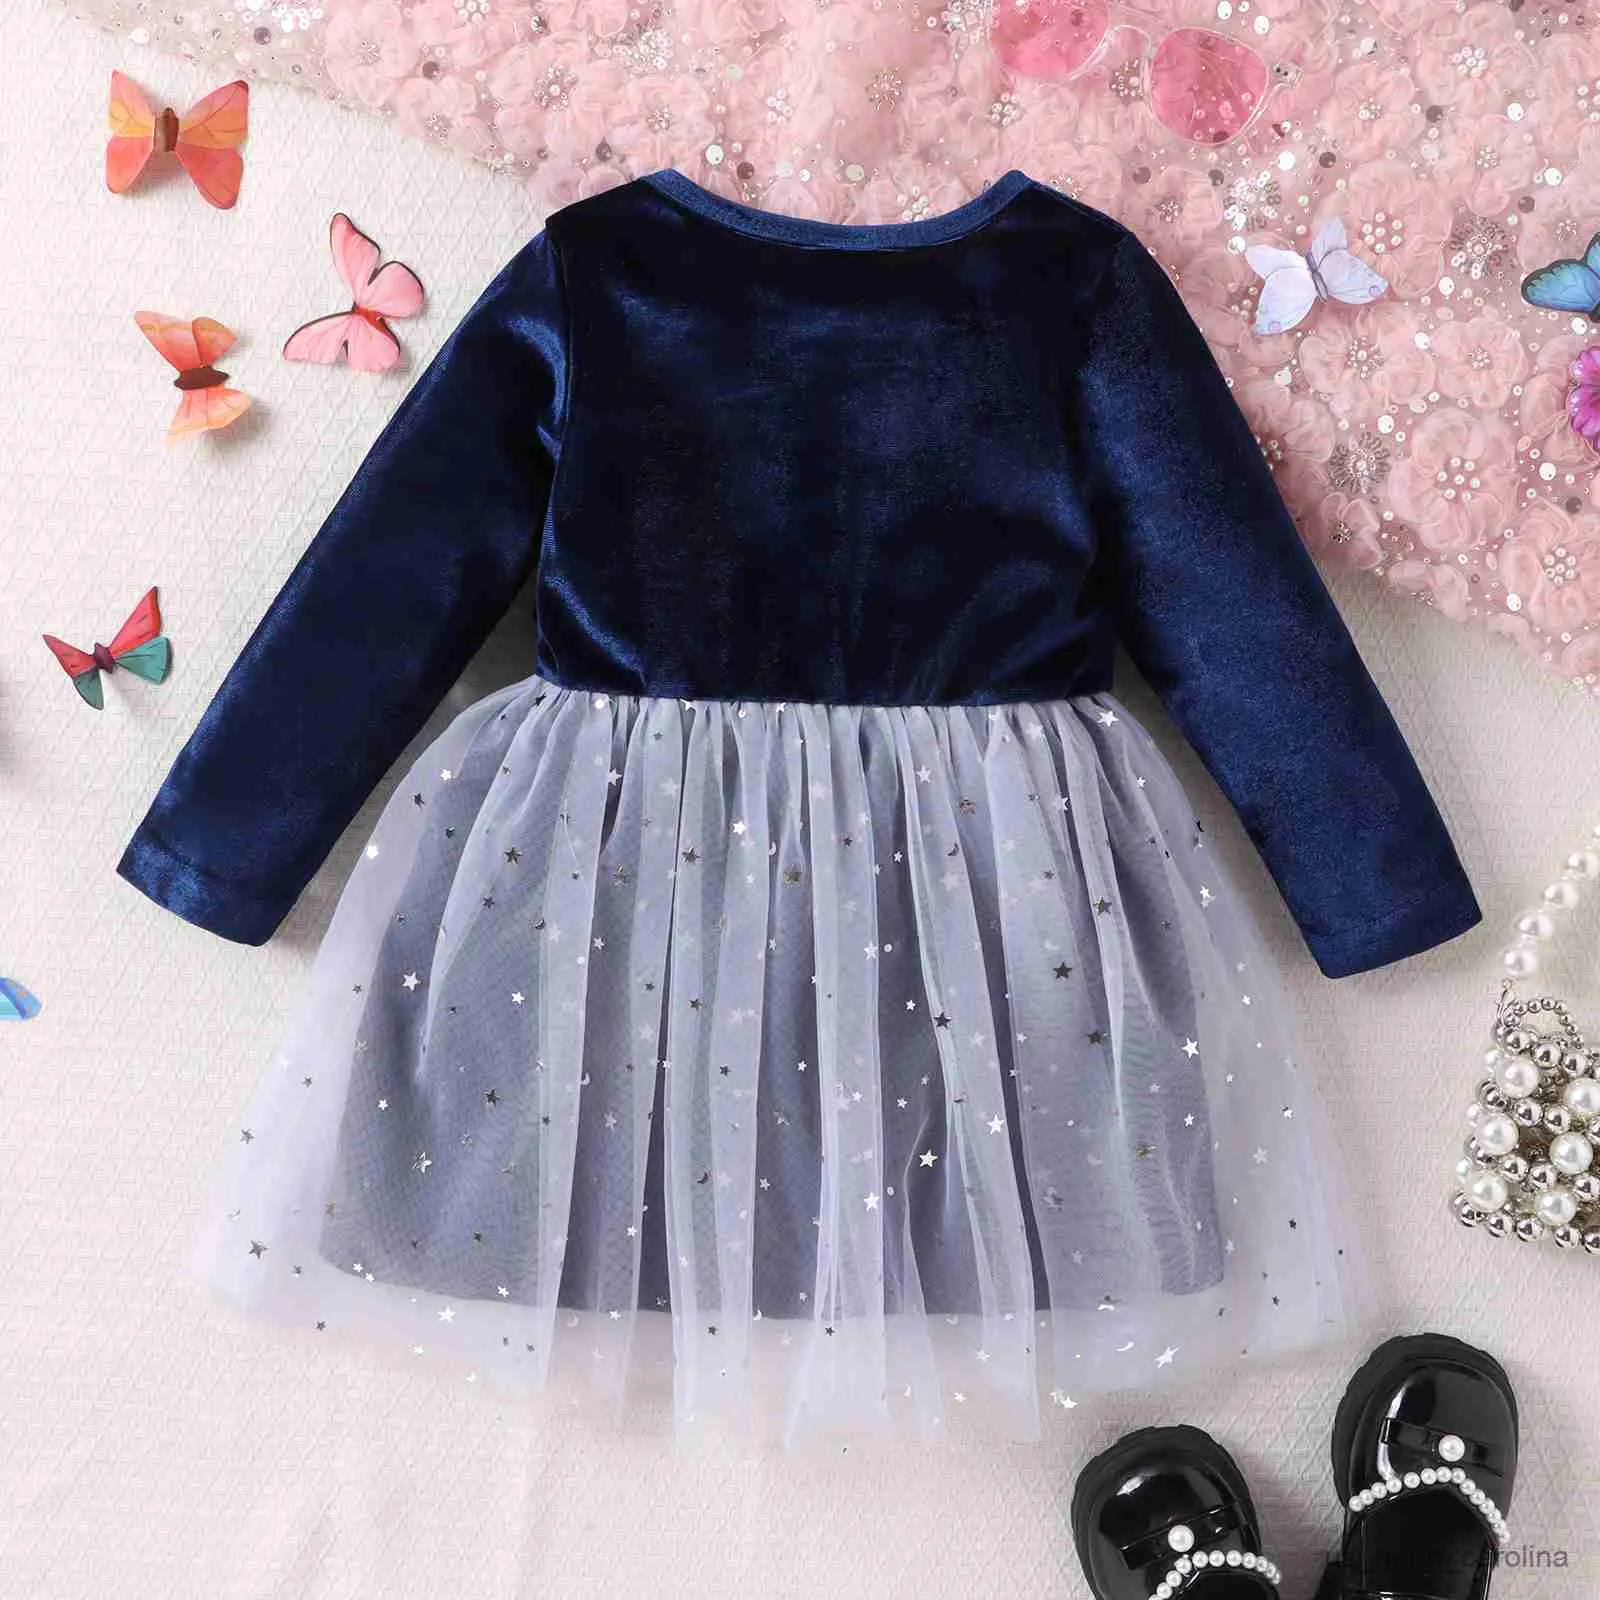 Kids Velvet Dress Designs & Collection for little girls. - YouTube